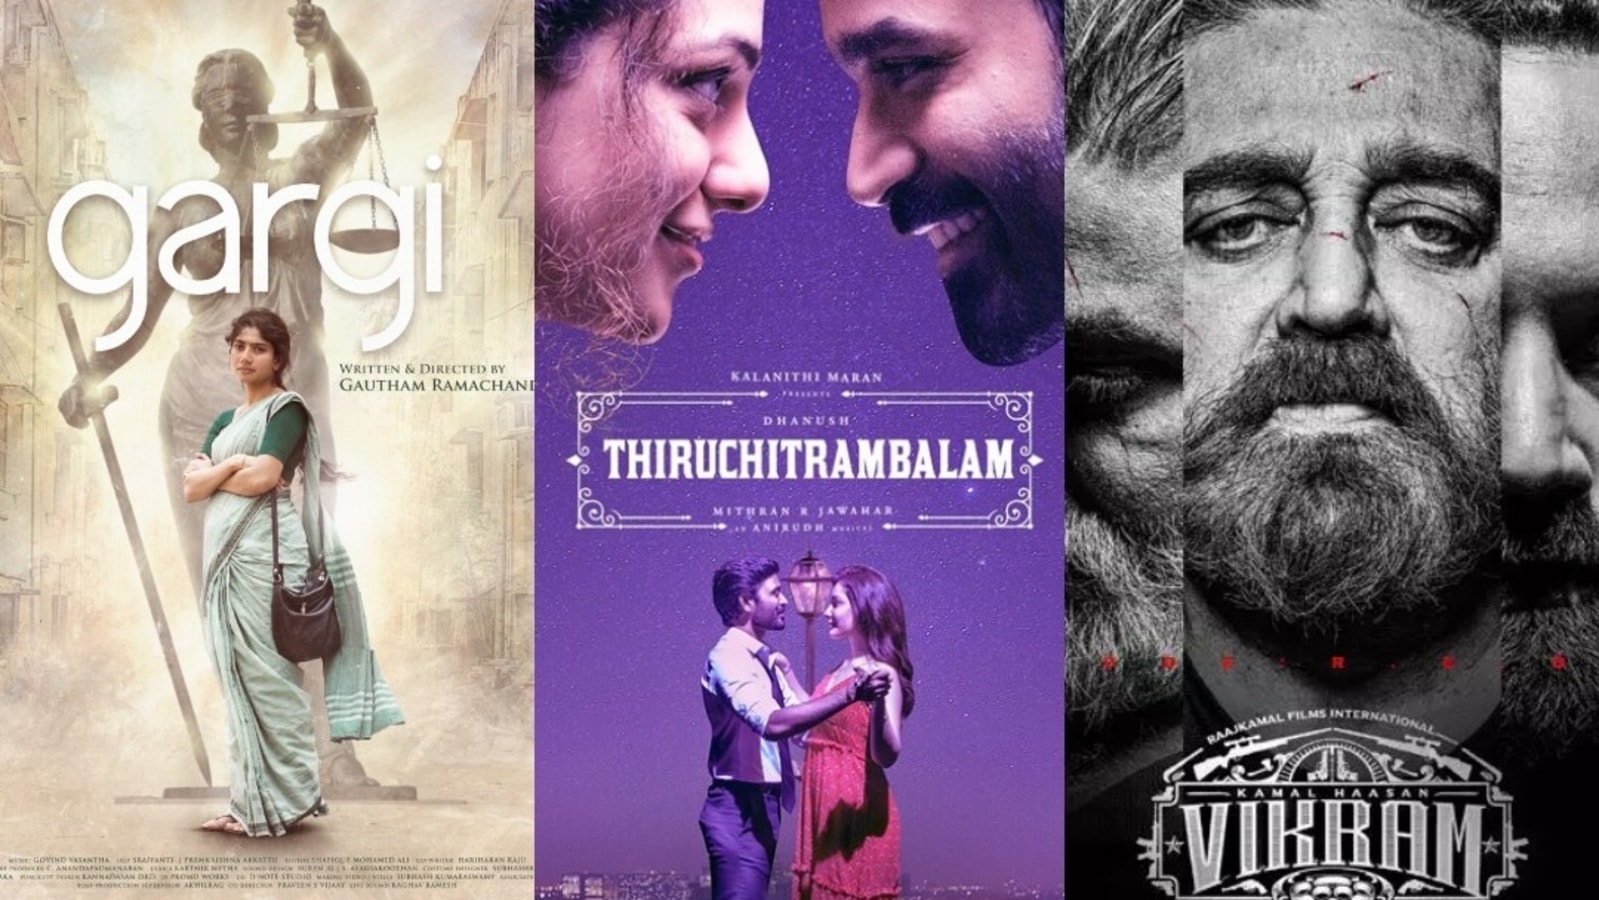 Gargi to Thiruchitrambalam and Vikram Best of Tamil cinema in 2022